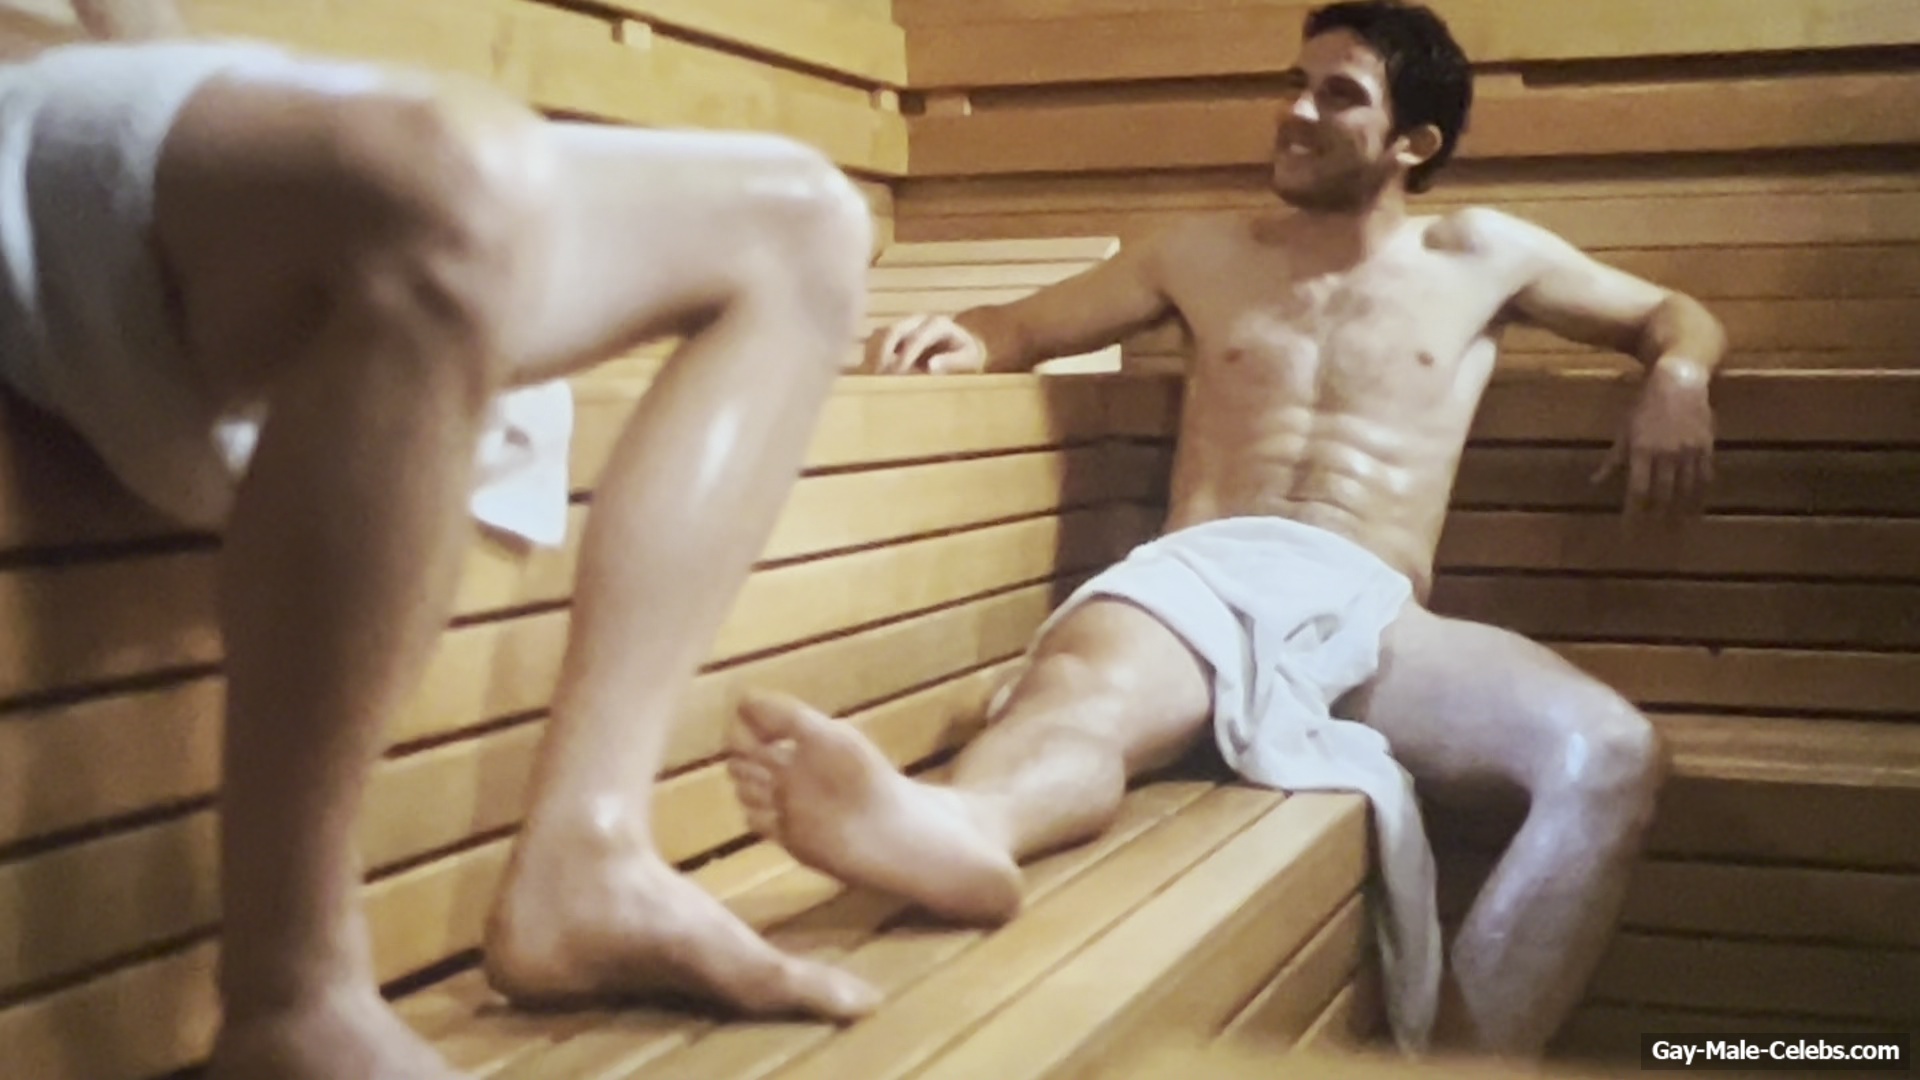 Josh O’Connor Nude And Erotic Gay Videos